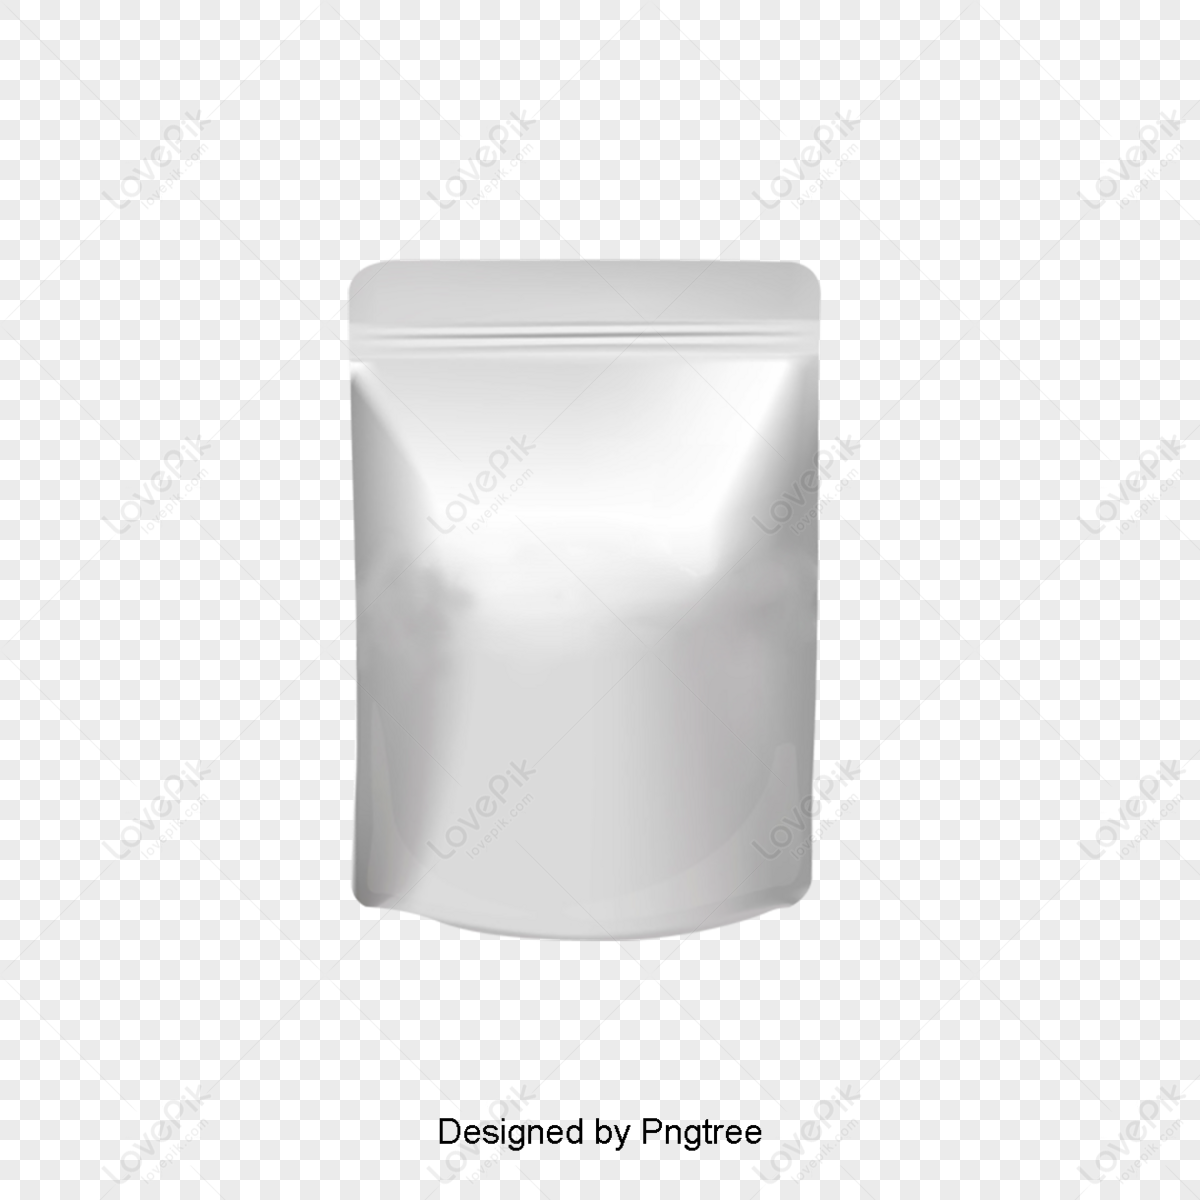 Drug Bag PNG Images With Transparent Background | Free Download On Lovepik